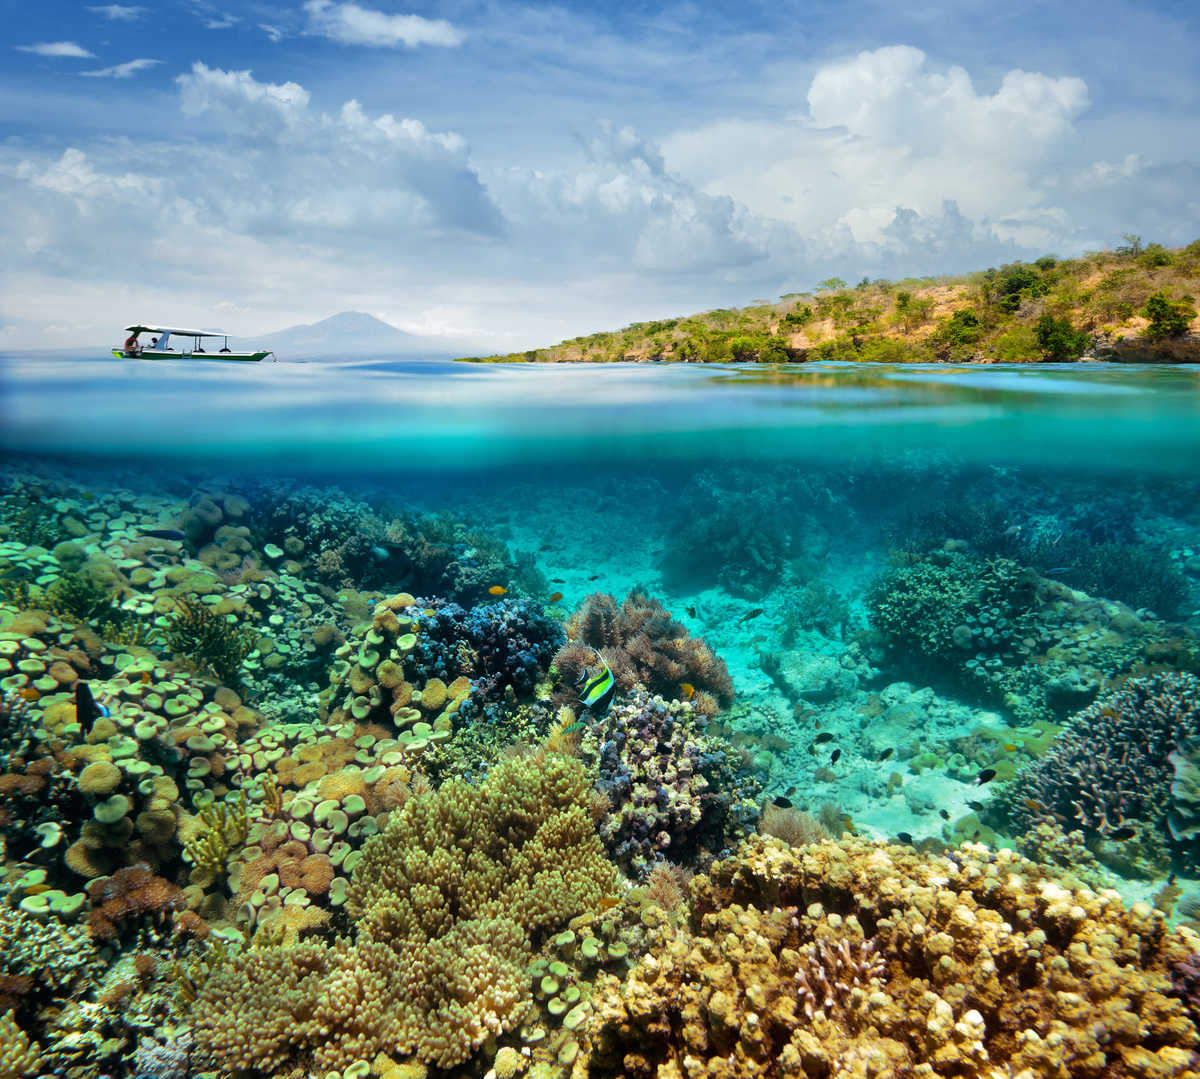 Session de Snorkeling sur l’île de Menjangan en Indonésie